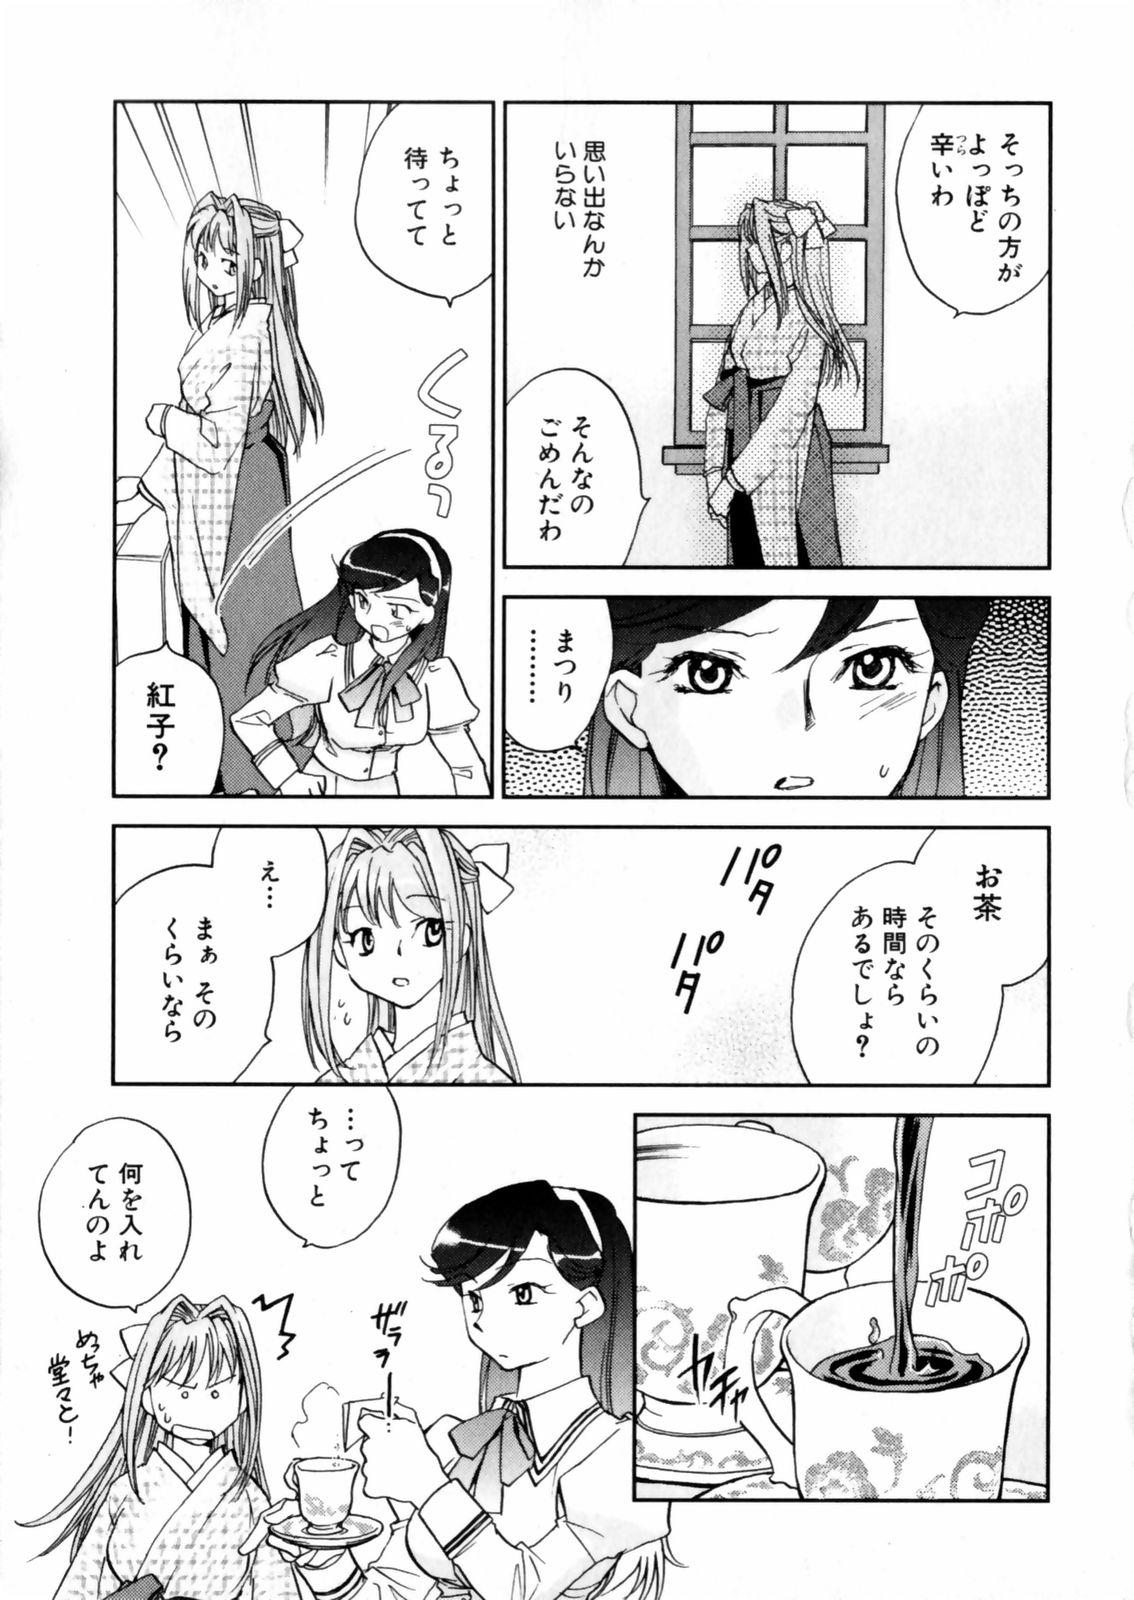 [Okano Ahiru] Hanasake ! Otome Juku (Otome Private Tutoring School) Vol.2 68